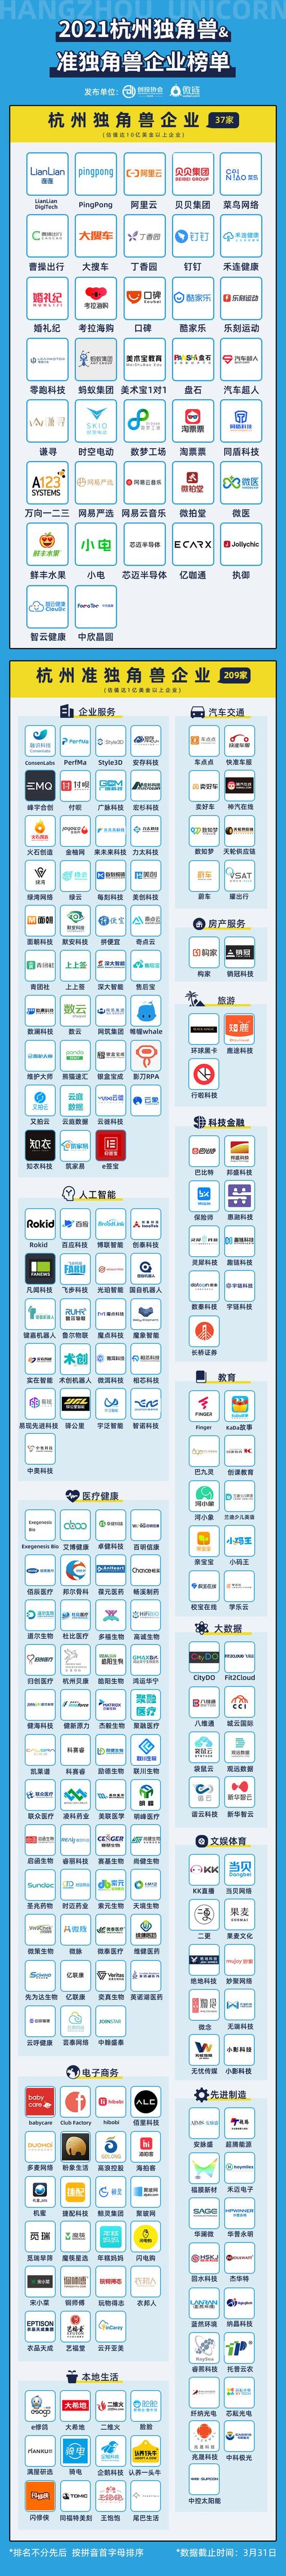 2021杭州独角兽&准独角兽企业榜单发布独角兽37家准独角兽209家